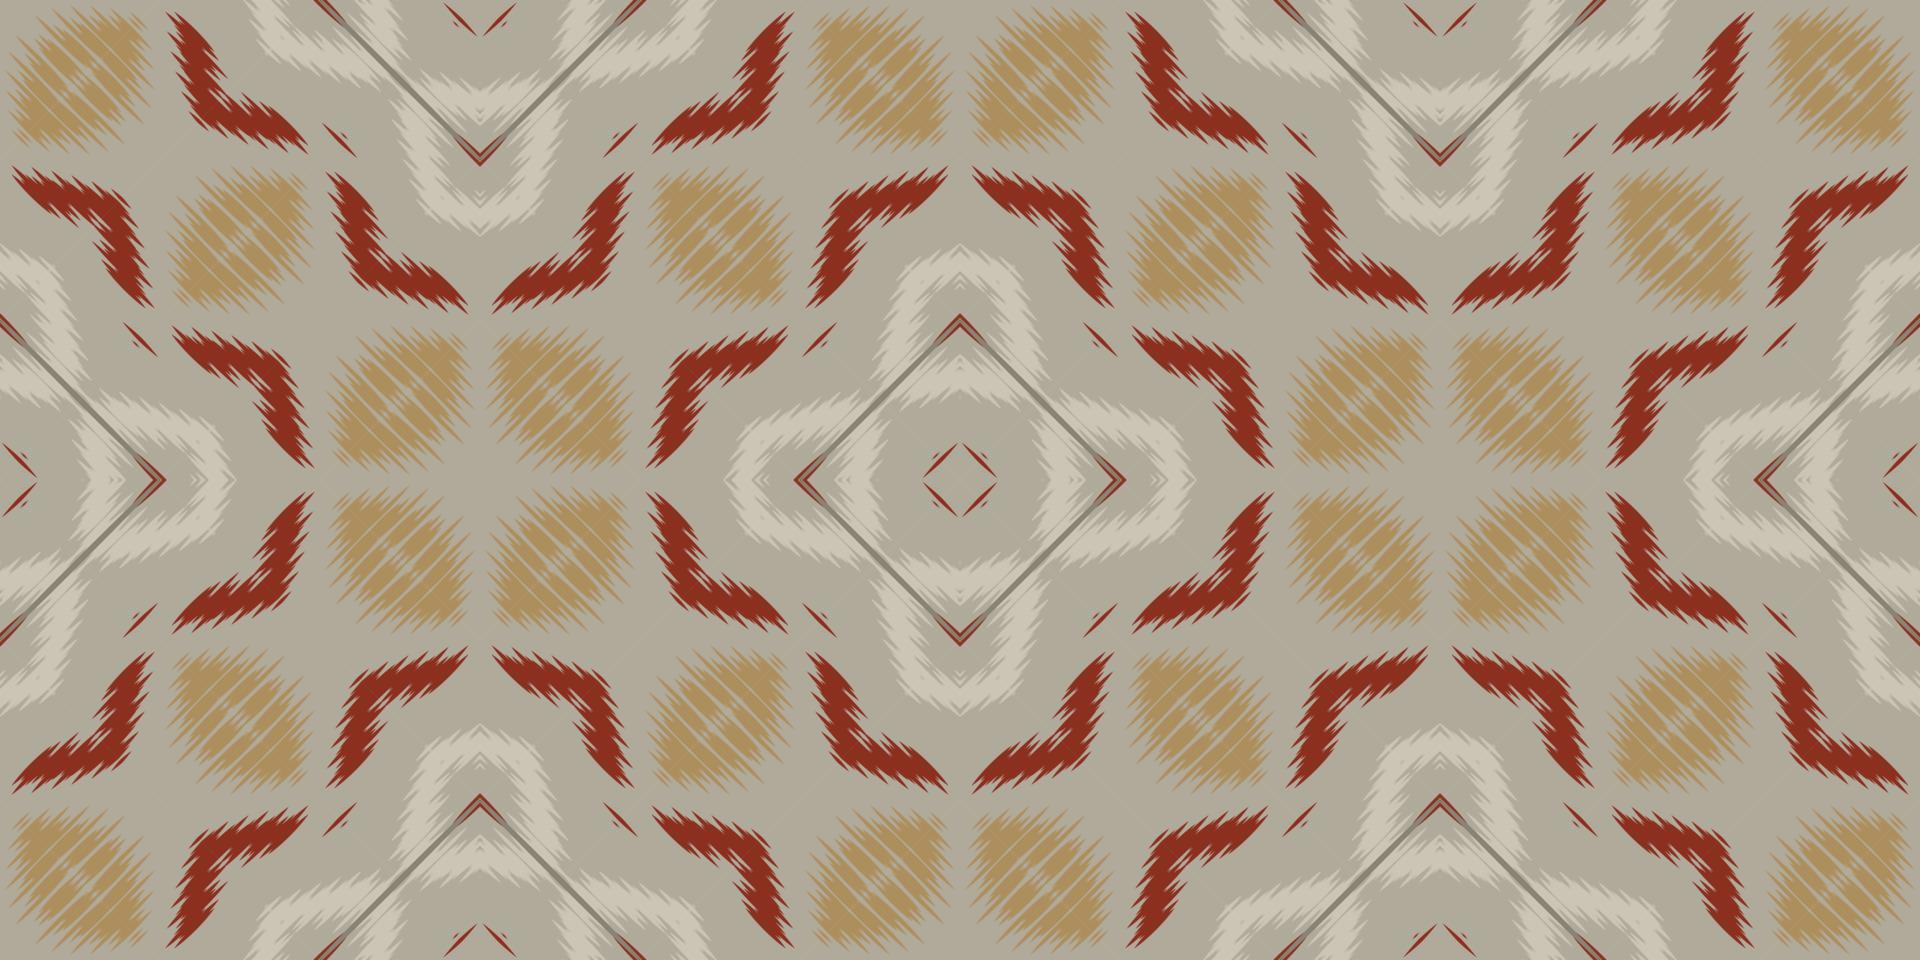 ikat mönster stam- sparre sömlös mönster. etnisk geometrisk batik ikkat digital vektor textil- design för grafik tyg saree mughal borsta symbol strängar textur kurti kurtis kurtas